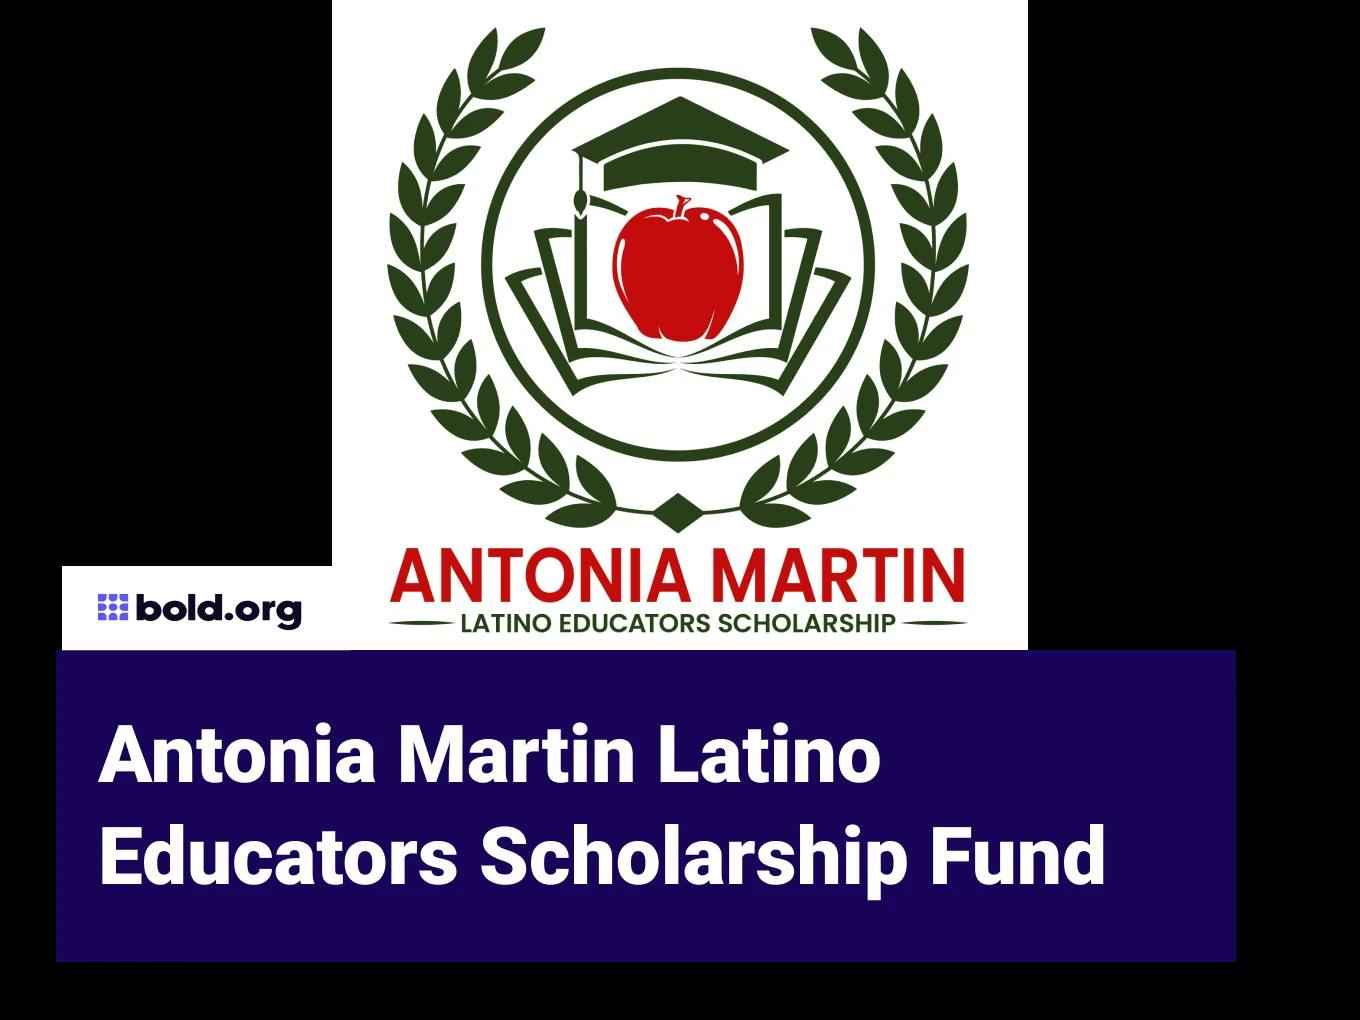 Antonia Martin Latino Educators Scholarship Fund